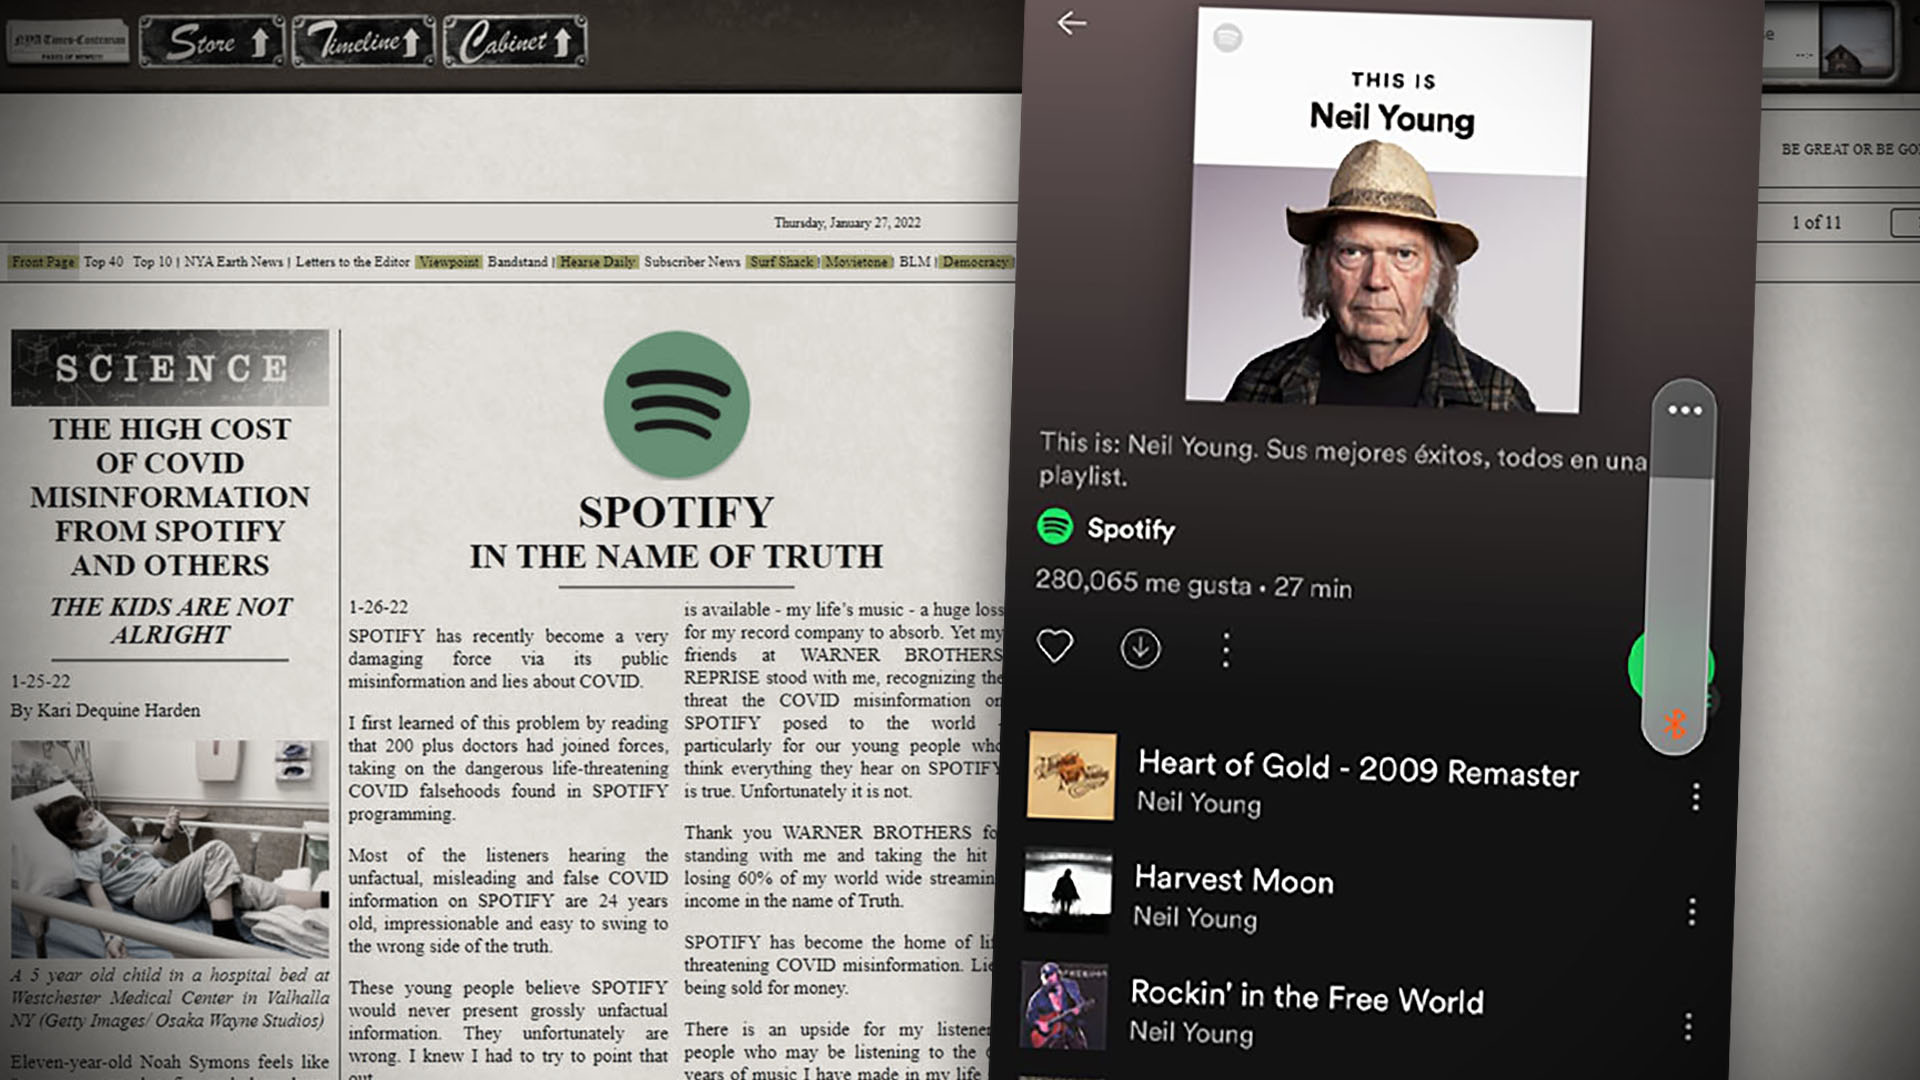 Neil Young escribió en su web: "los jóvenes creen que Spotify nunca presentaría información totalmente falsa. Desafortunadamente están equivocados”